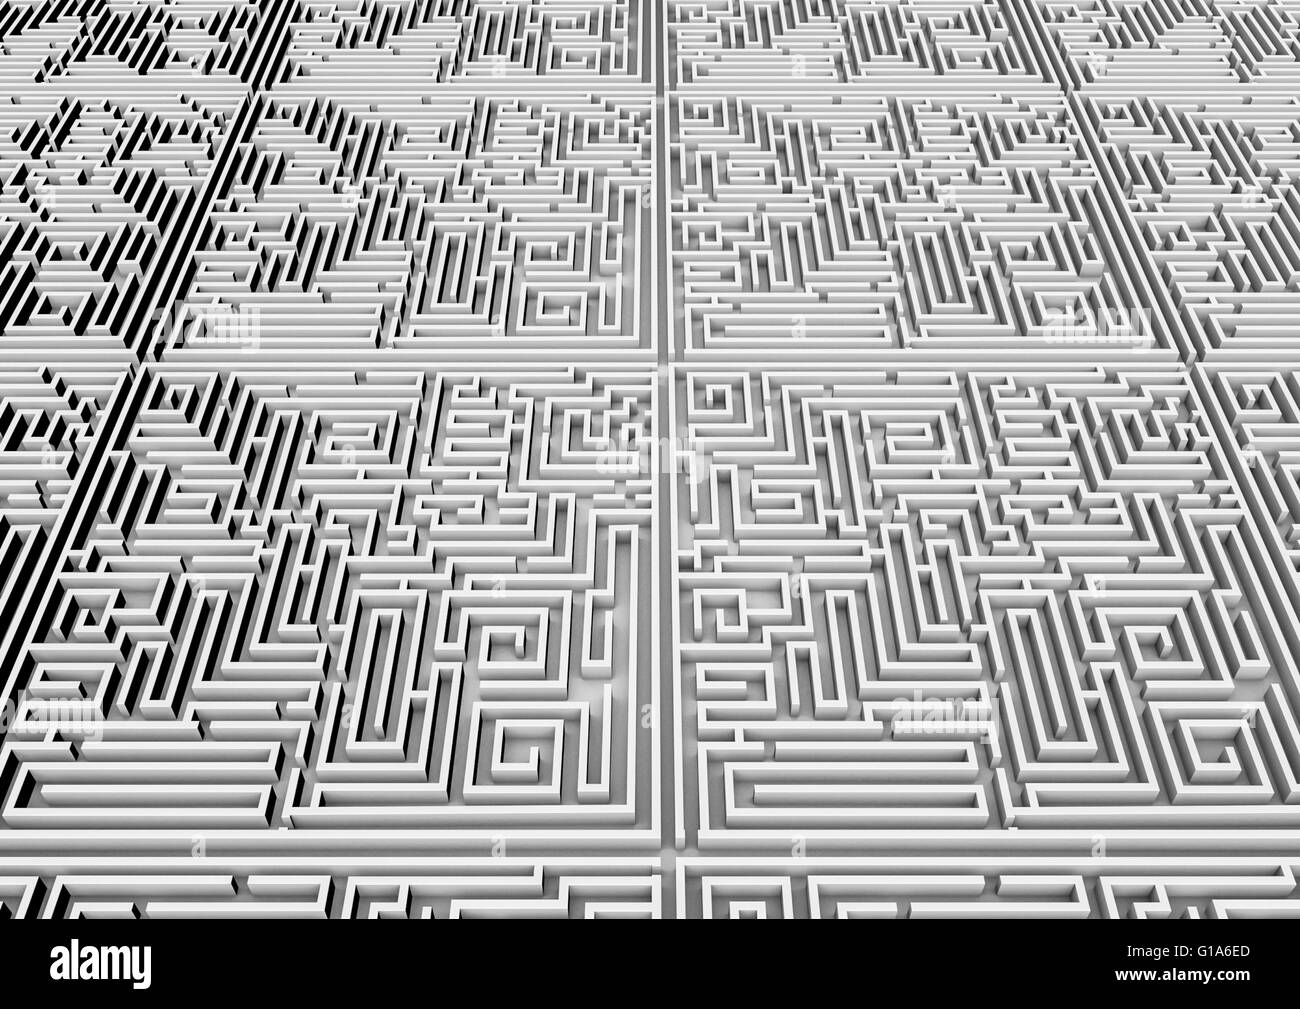 Contexte / labyrinthe 3D render of labyrinthe géant qui s'étend à l'horizon Banque D'Images